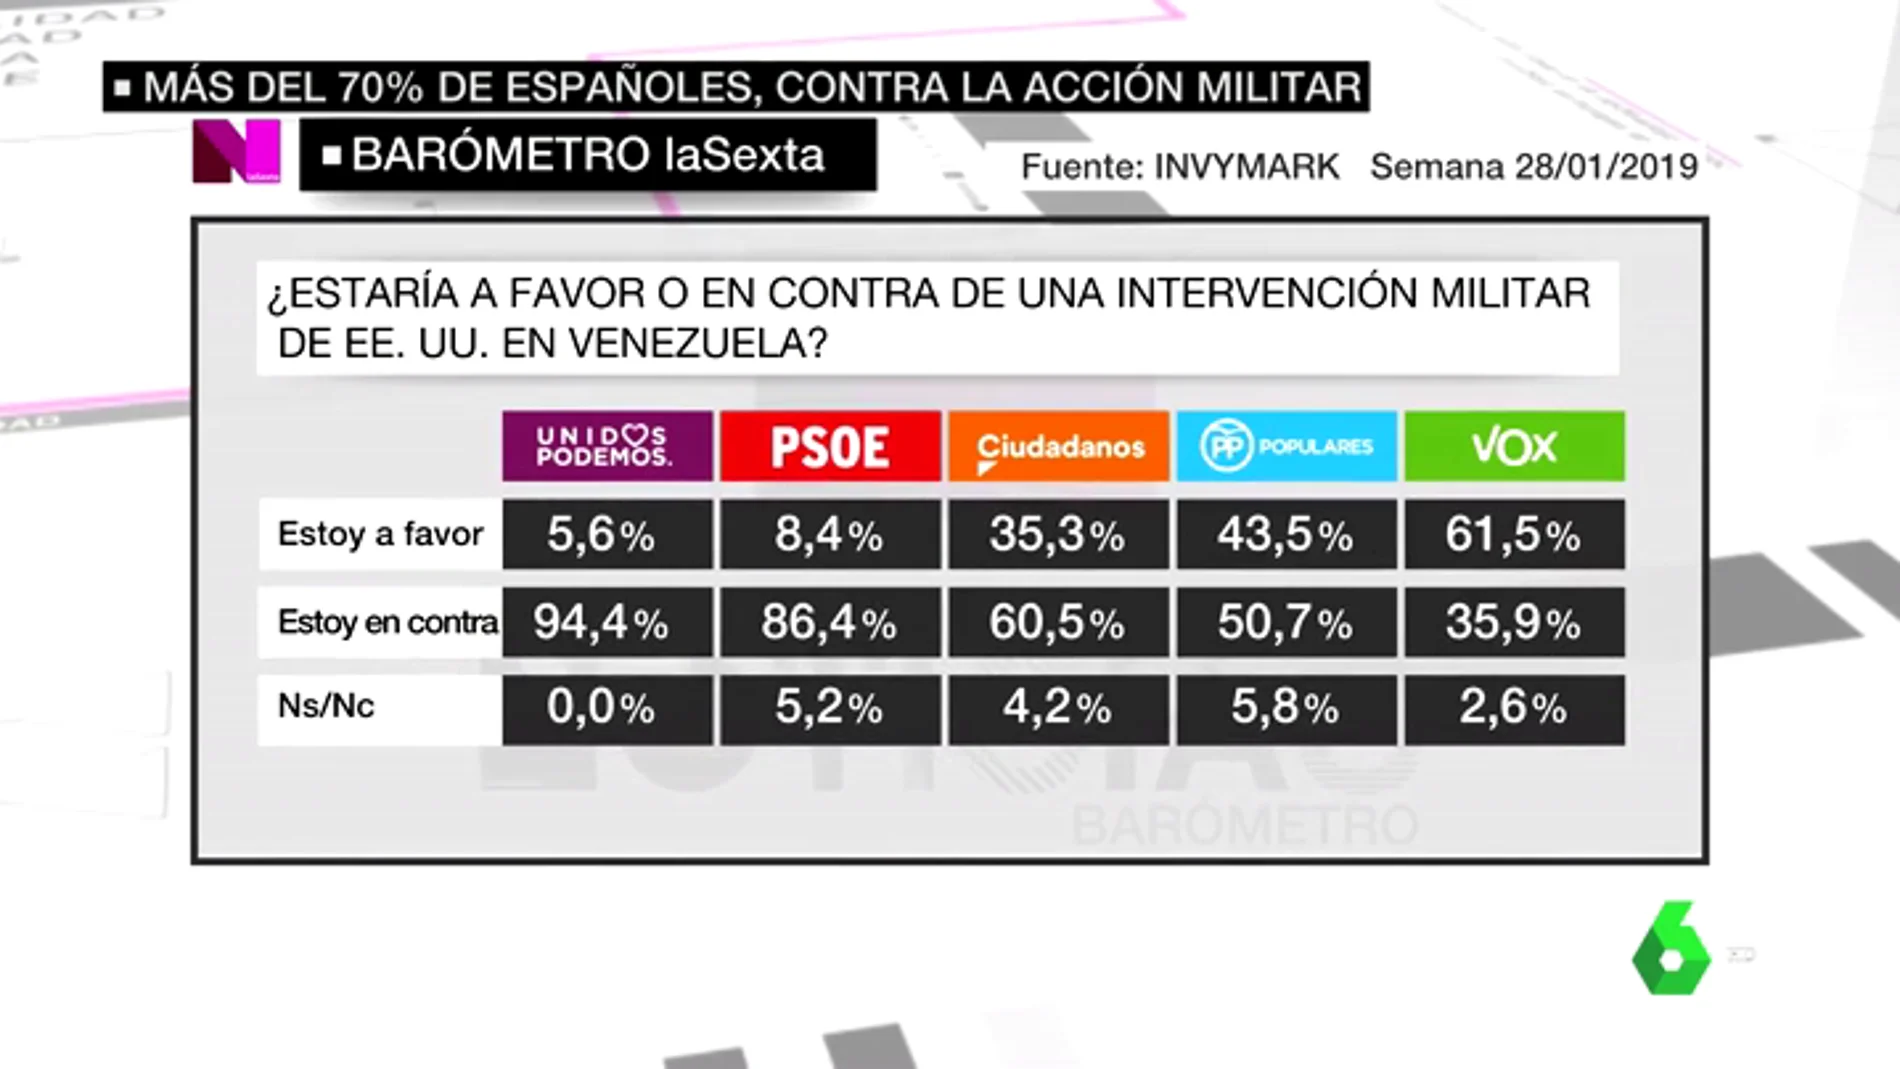 Barómetro laSexta: Un 73,5% de los españoles está en contra de la intervención militar estadounidense en Venezuela